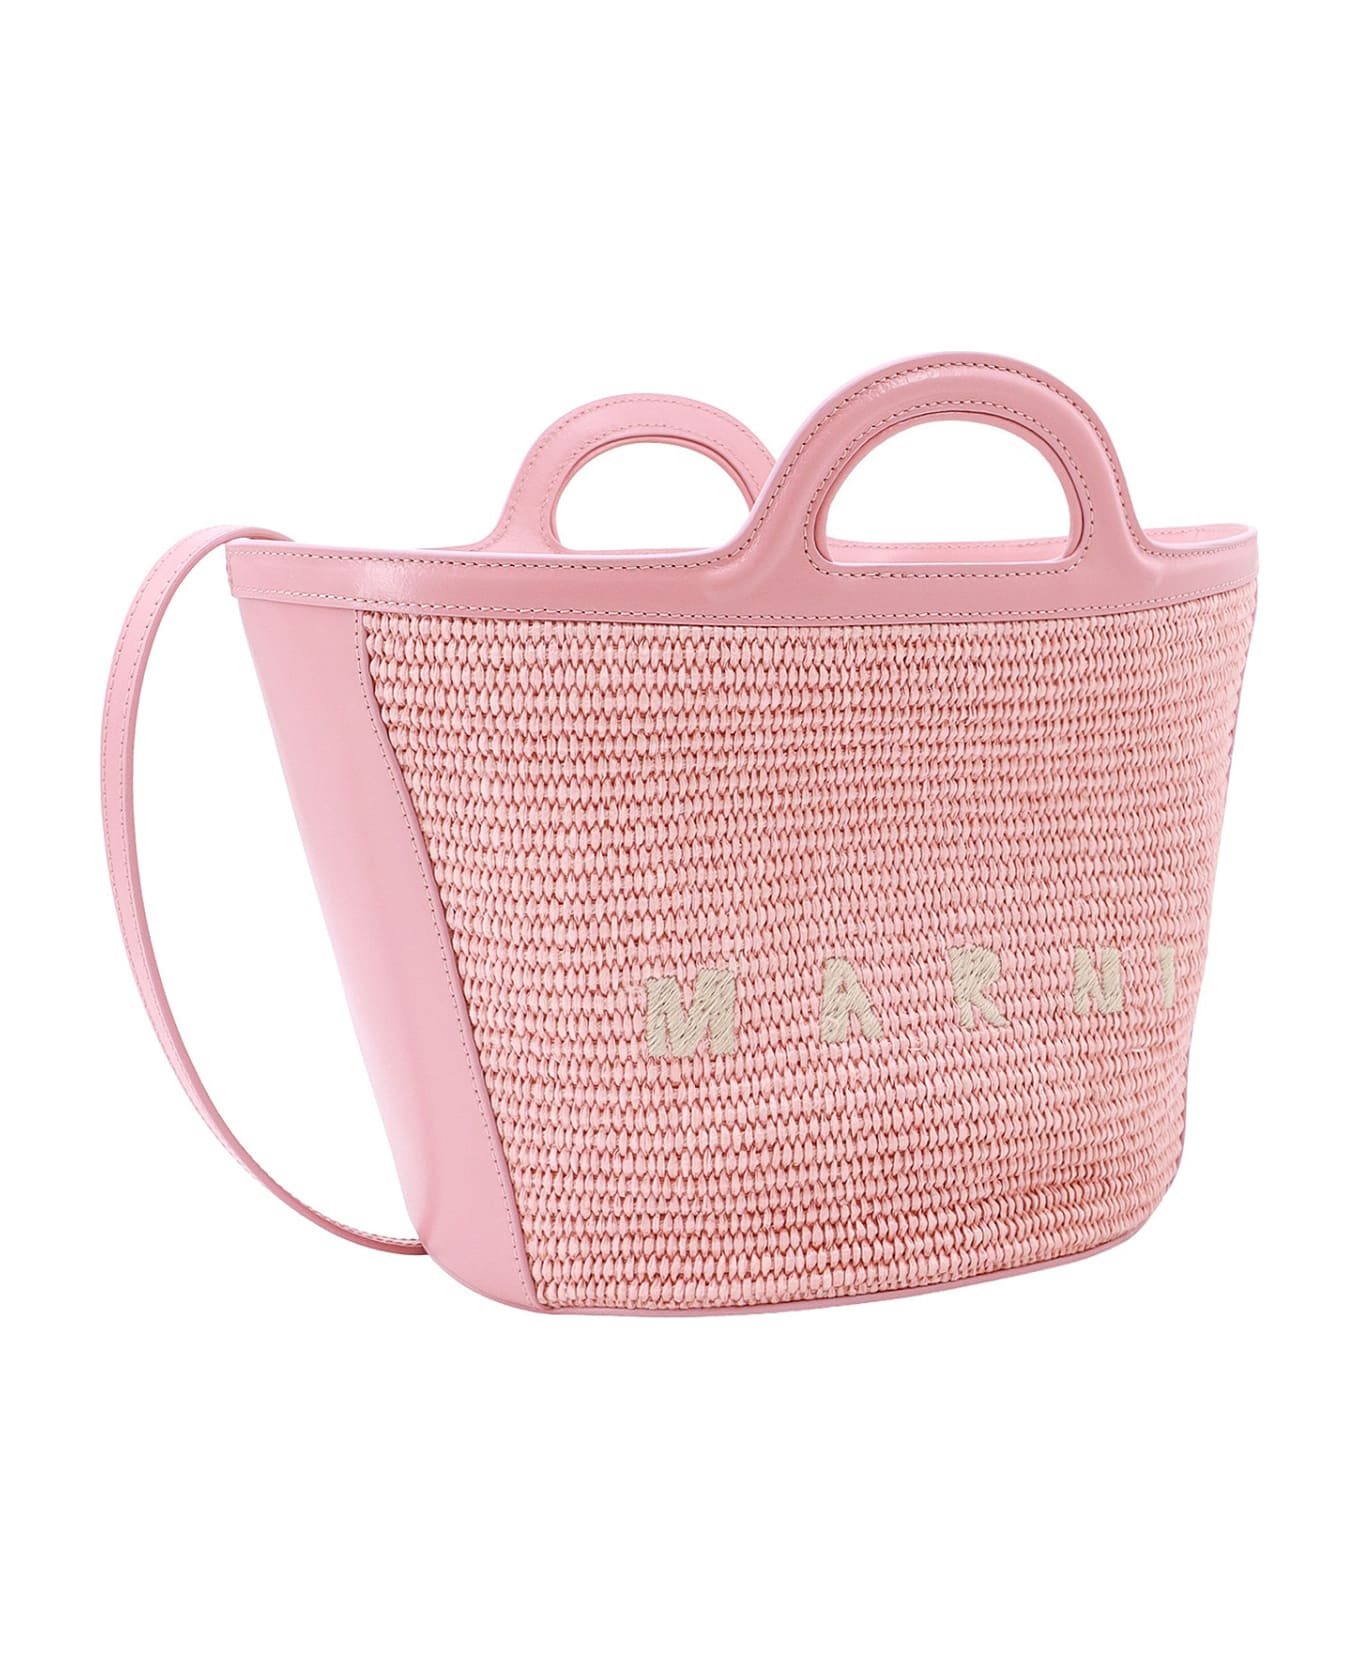 Marni Tropicalia Handbag - Pink トートバッグ